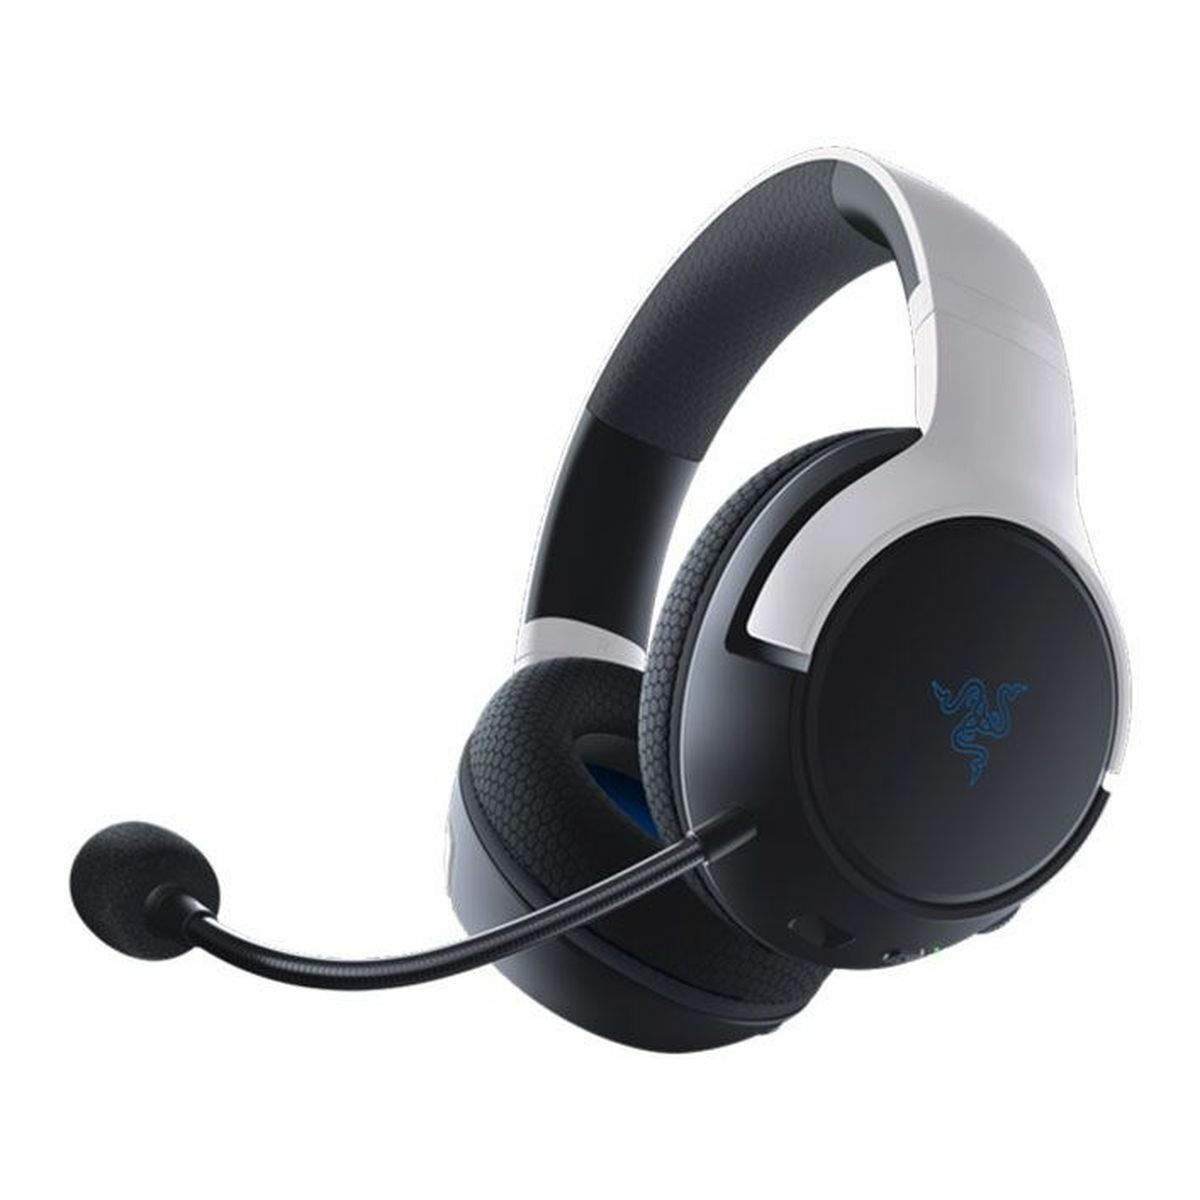 Kép 2/4 - Razer Kaira vezeték nélküli gamer headset PlayStation-höz, fehér/fekete EU (RZ04-03980100-R3M1)